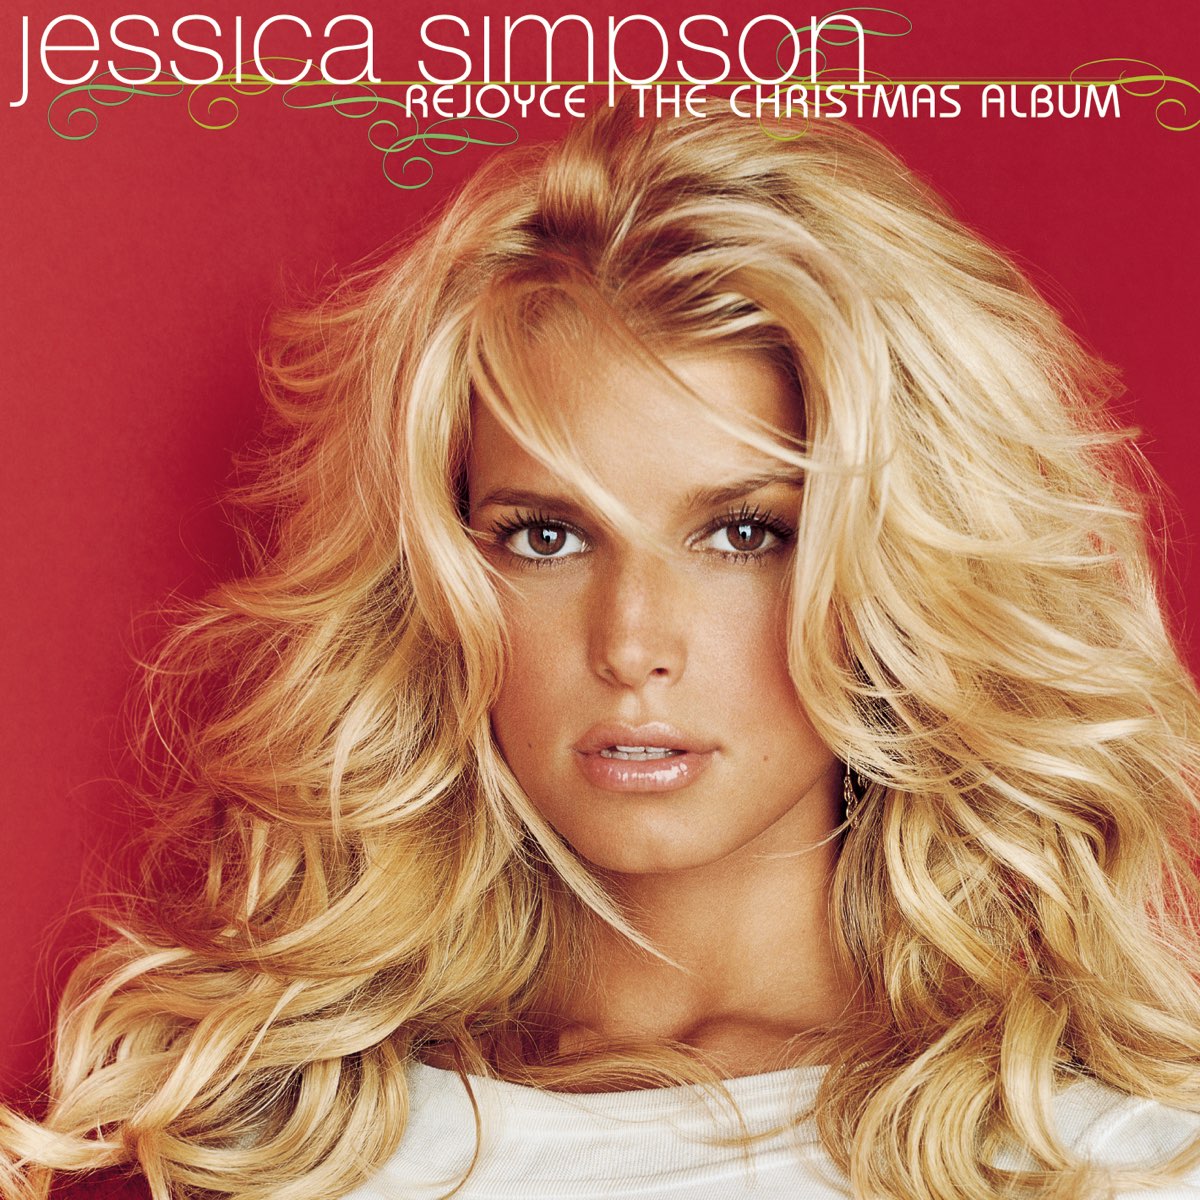 Jessica Simpson Rejoyce: The Christmas Album cover artwork